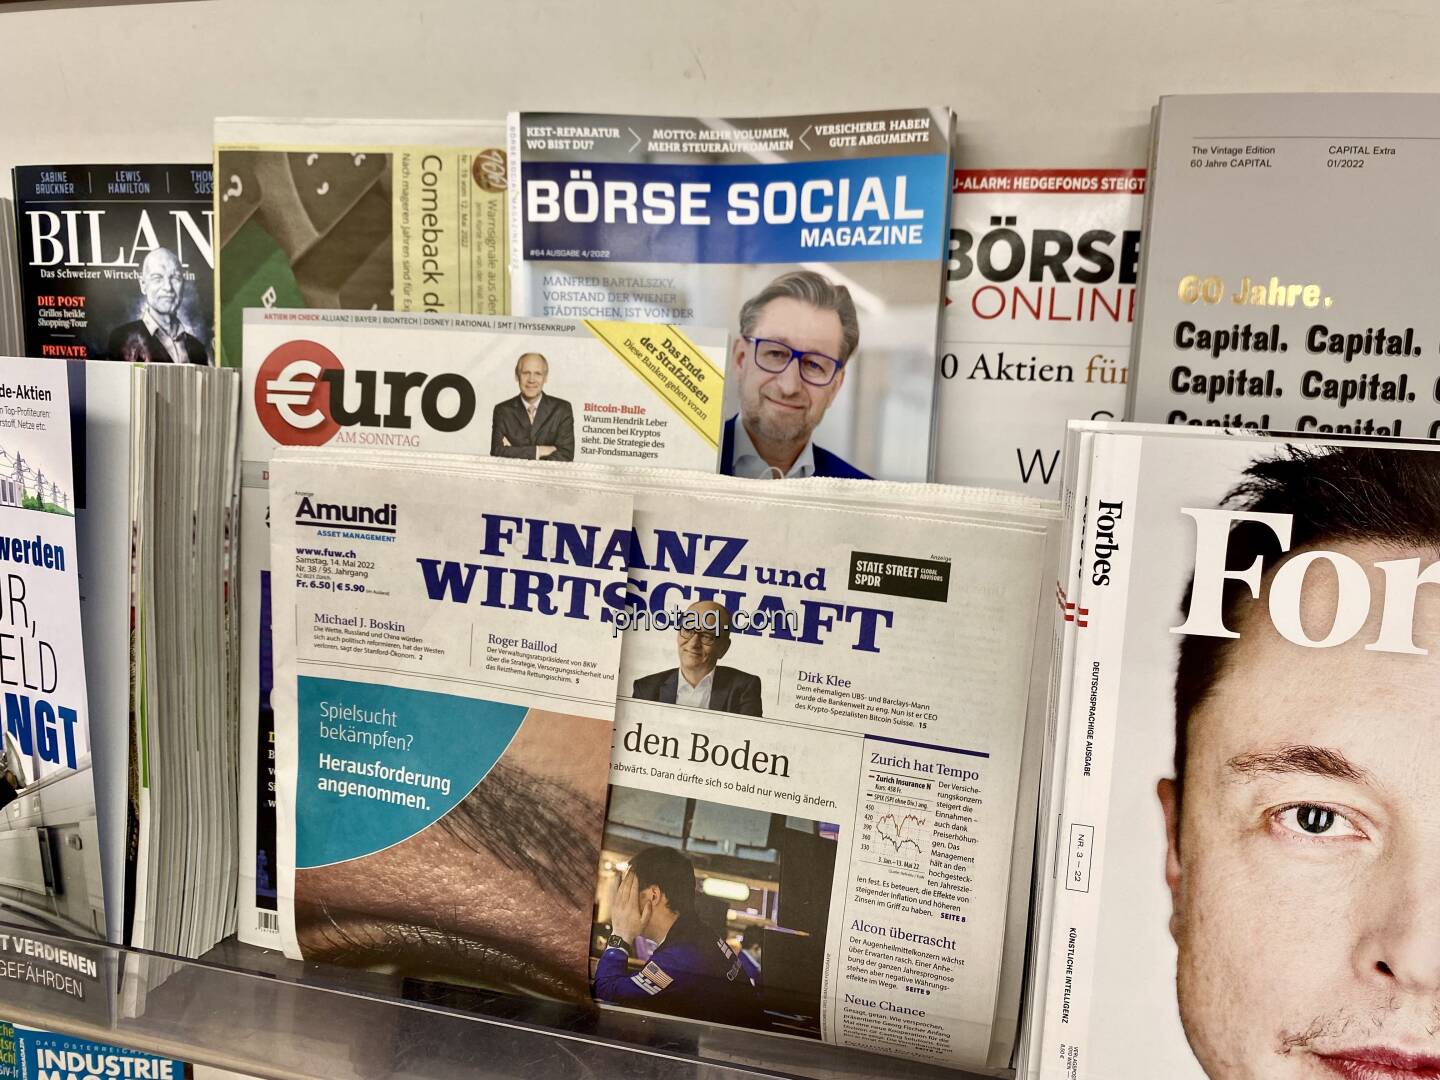 Börse Social Magazine #64, Kiosk, Morawa, ESt-, KESt- stressfrei - Manfred Bartalszky, Vorstand der Wiener Städtischen - http://boerse-social.com/magazine